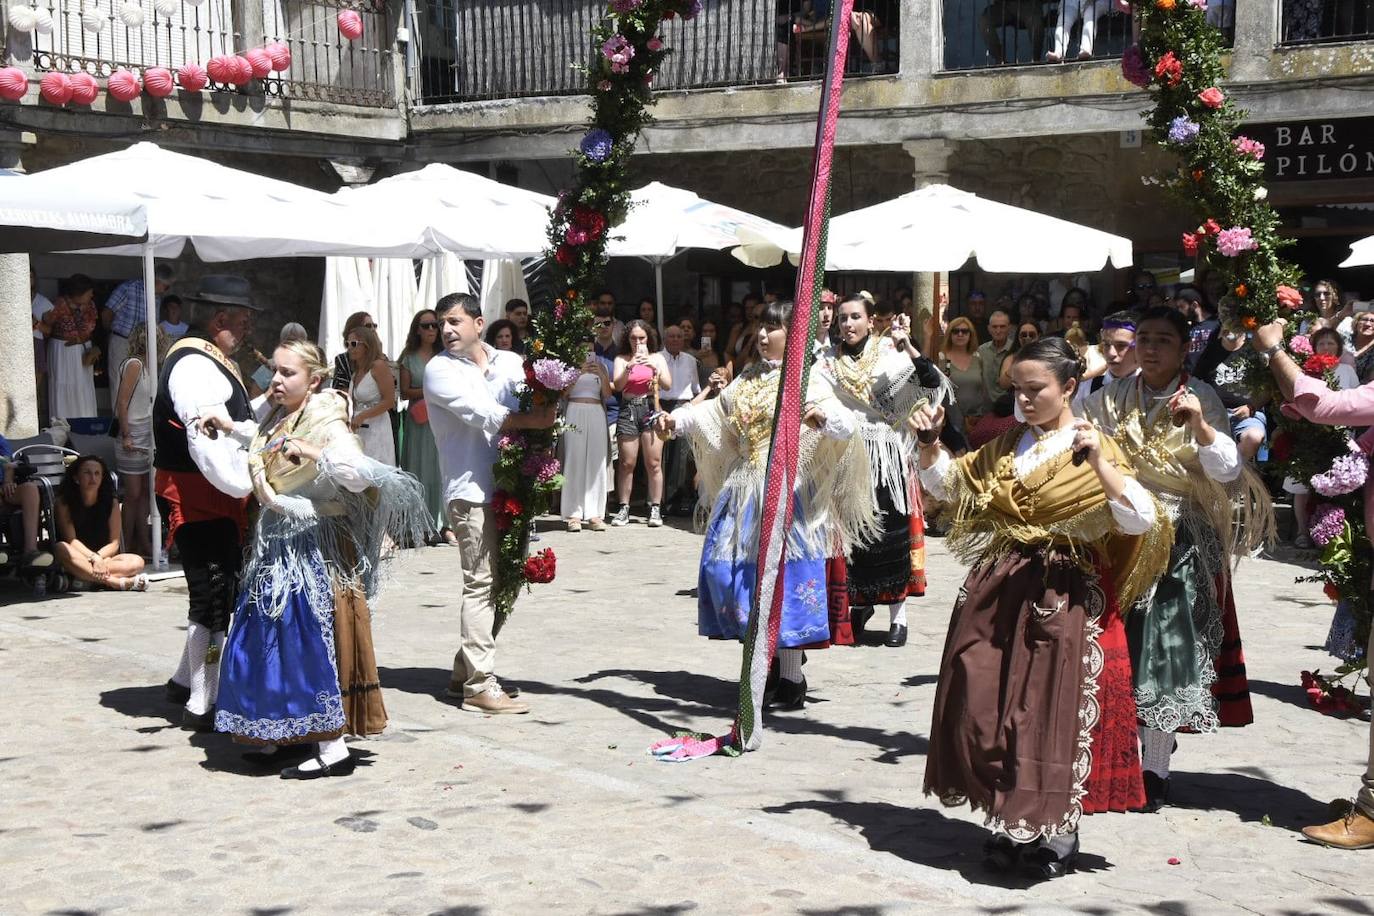 Música y bailes en honor la Virgen en San Martín del Castañar